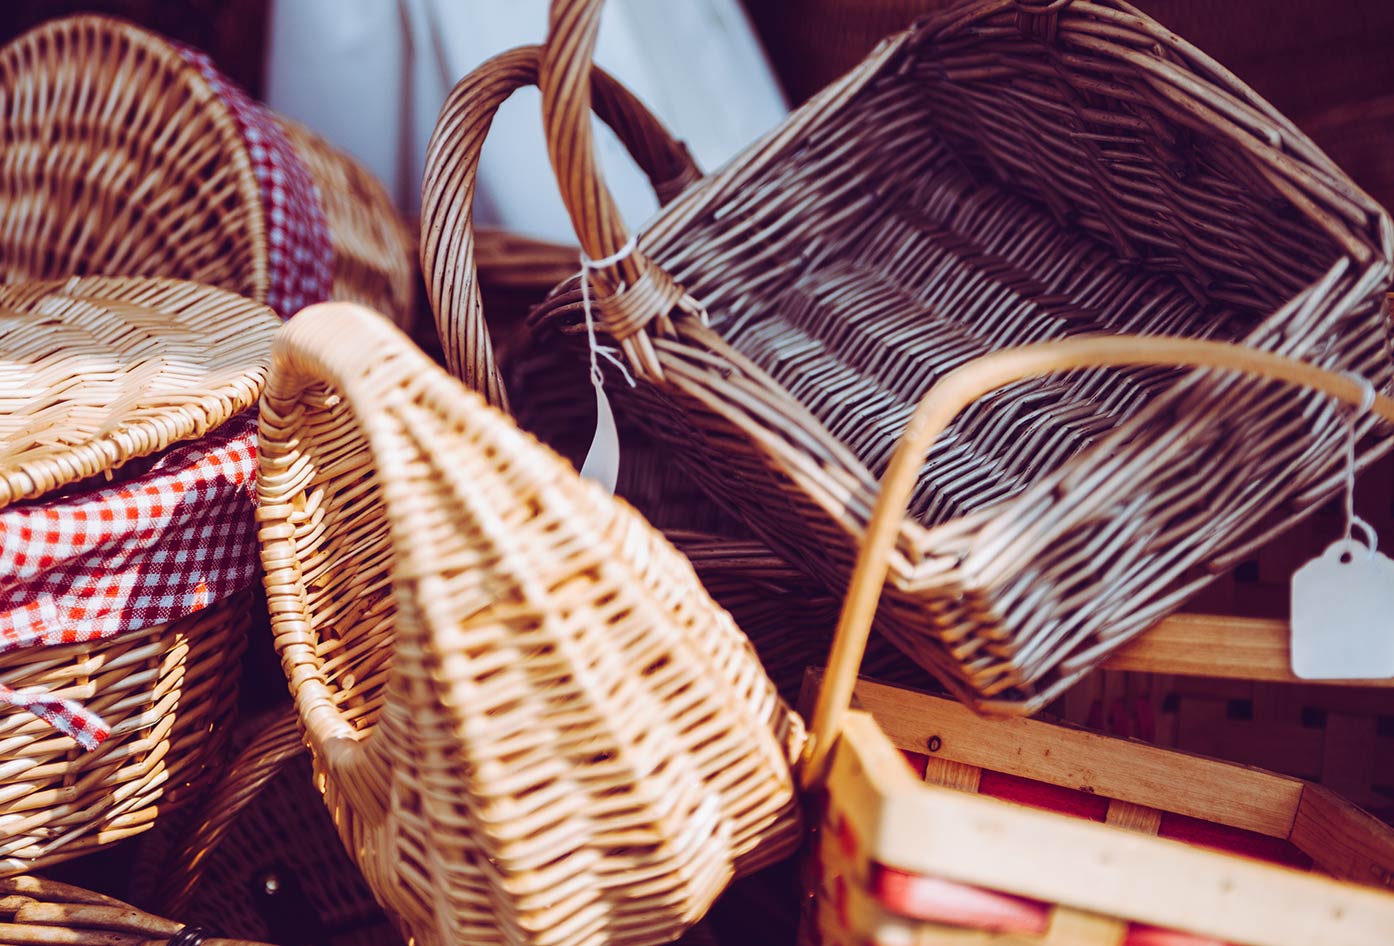 vegan gift baskets for travel